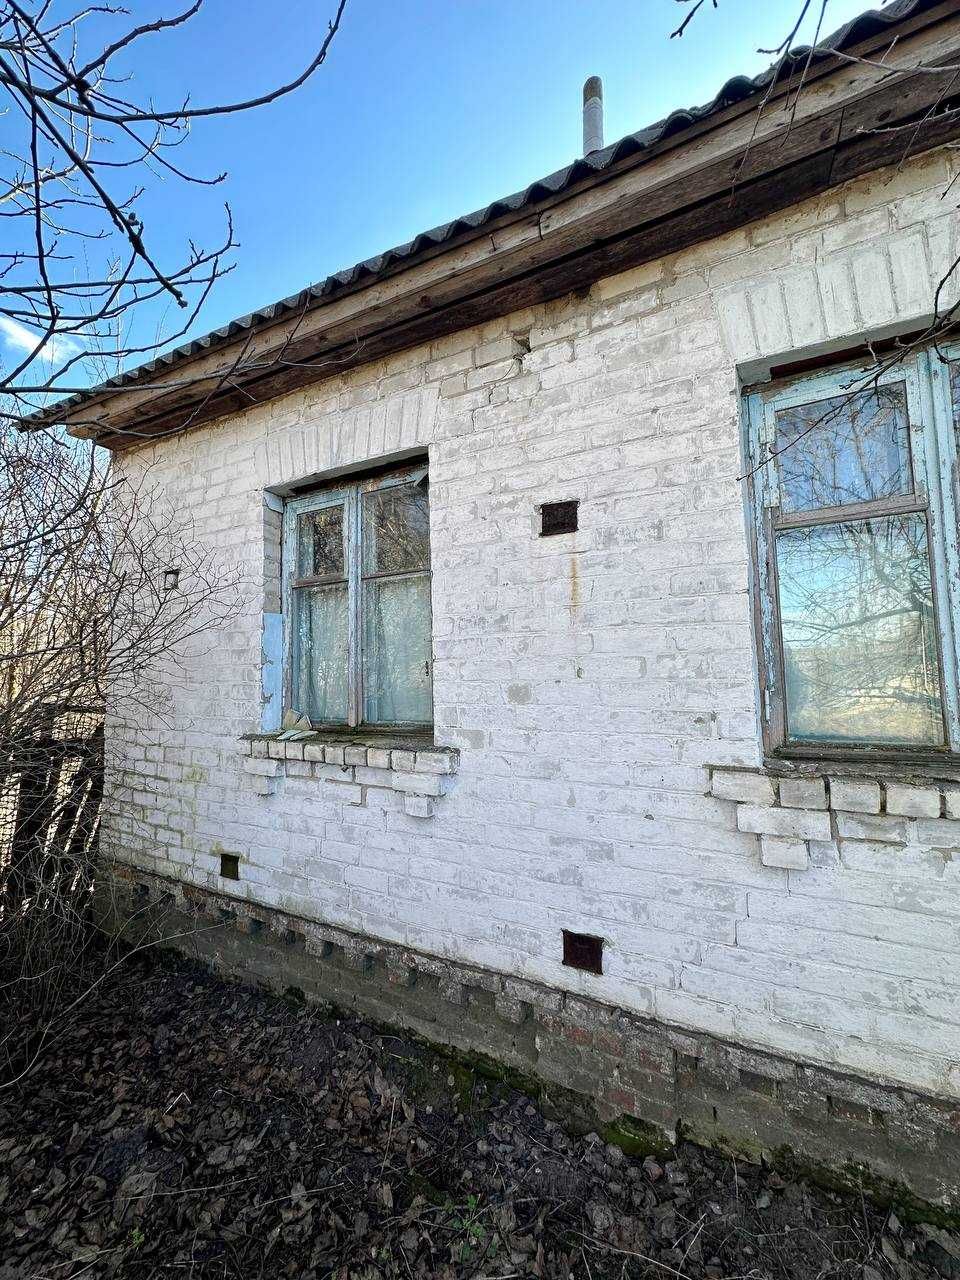 Дачний будинок,село Довжик 25 км від Чернігова (NN)